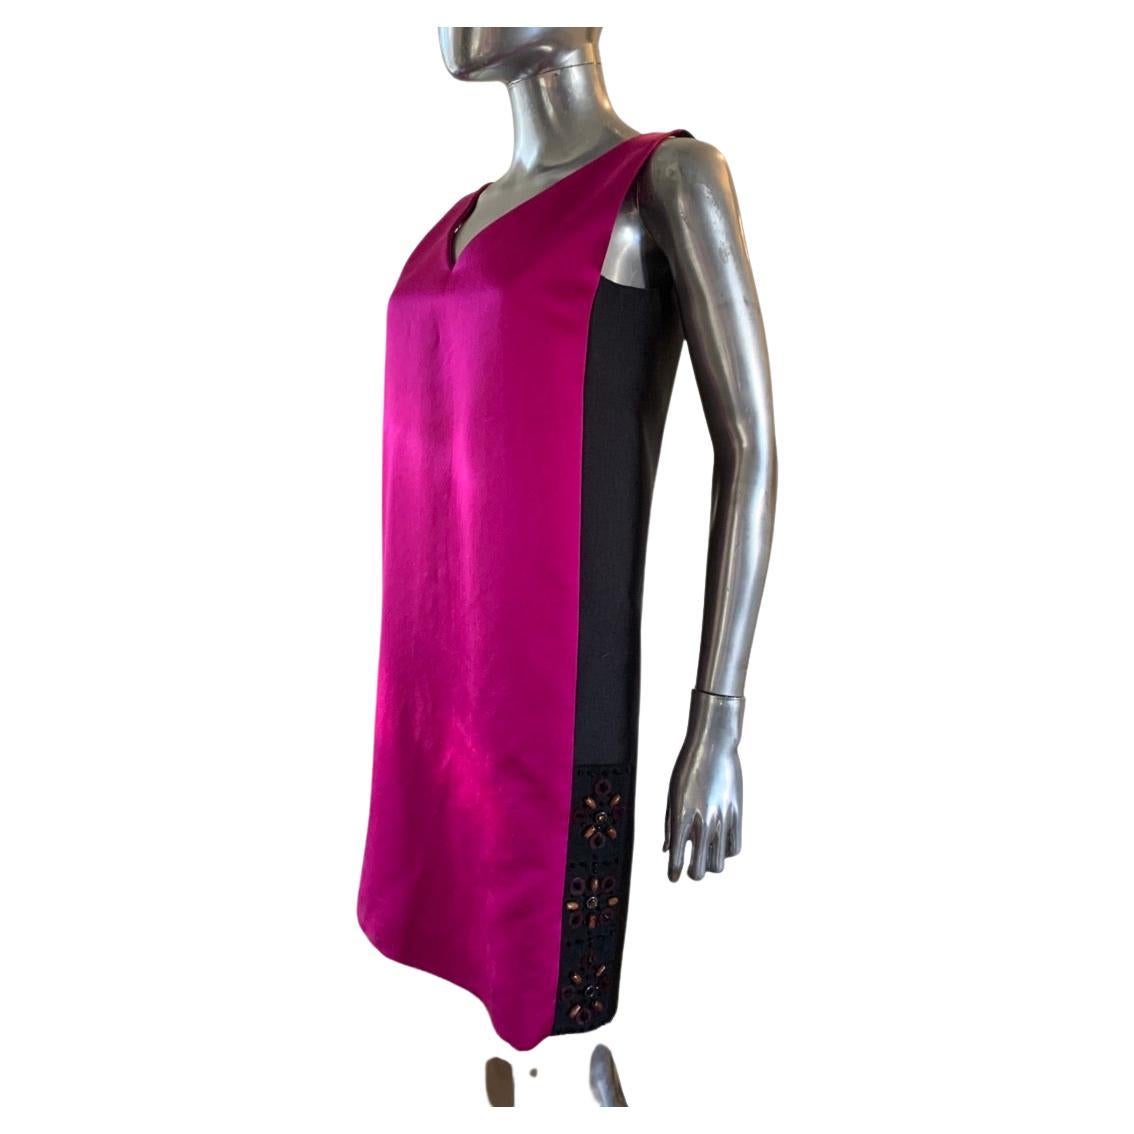 Cette robe Lanvin est si moderne et chic ! Un devant en soie rose shocking et un dos en soie noire avec des perles très modernes des deux côtés de l'ourlet. NWT, cette robe a été conçue par Alber Elbaz pour la collection Runway de l'été 2013. Acheté